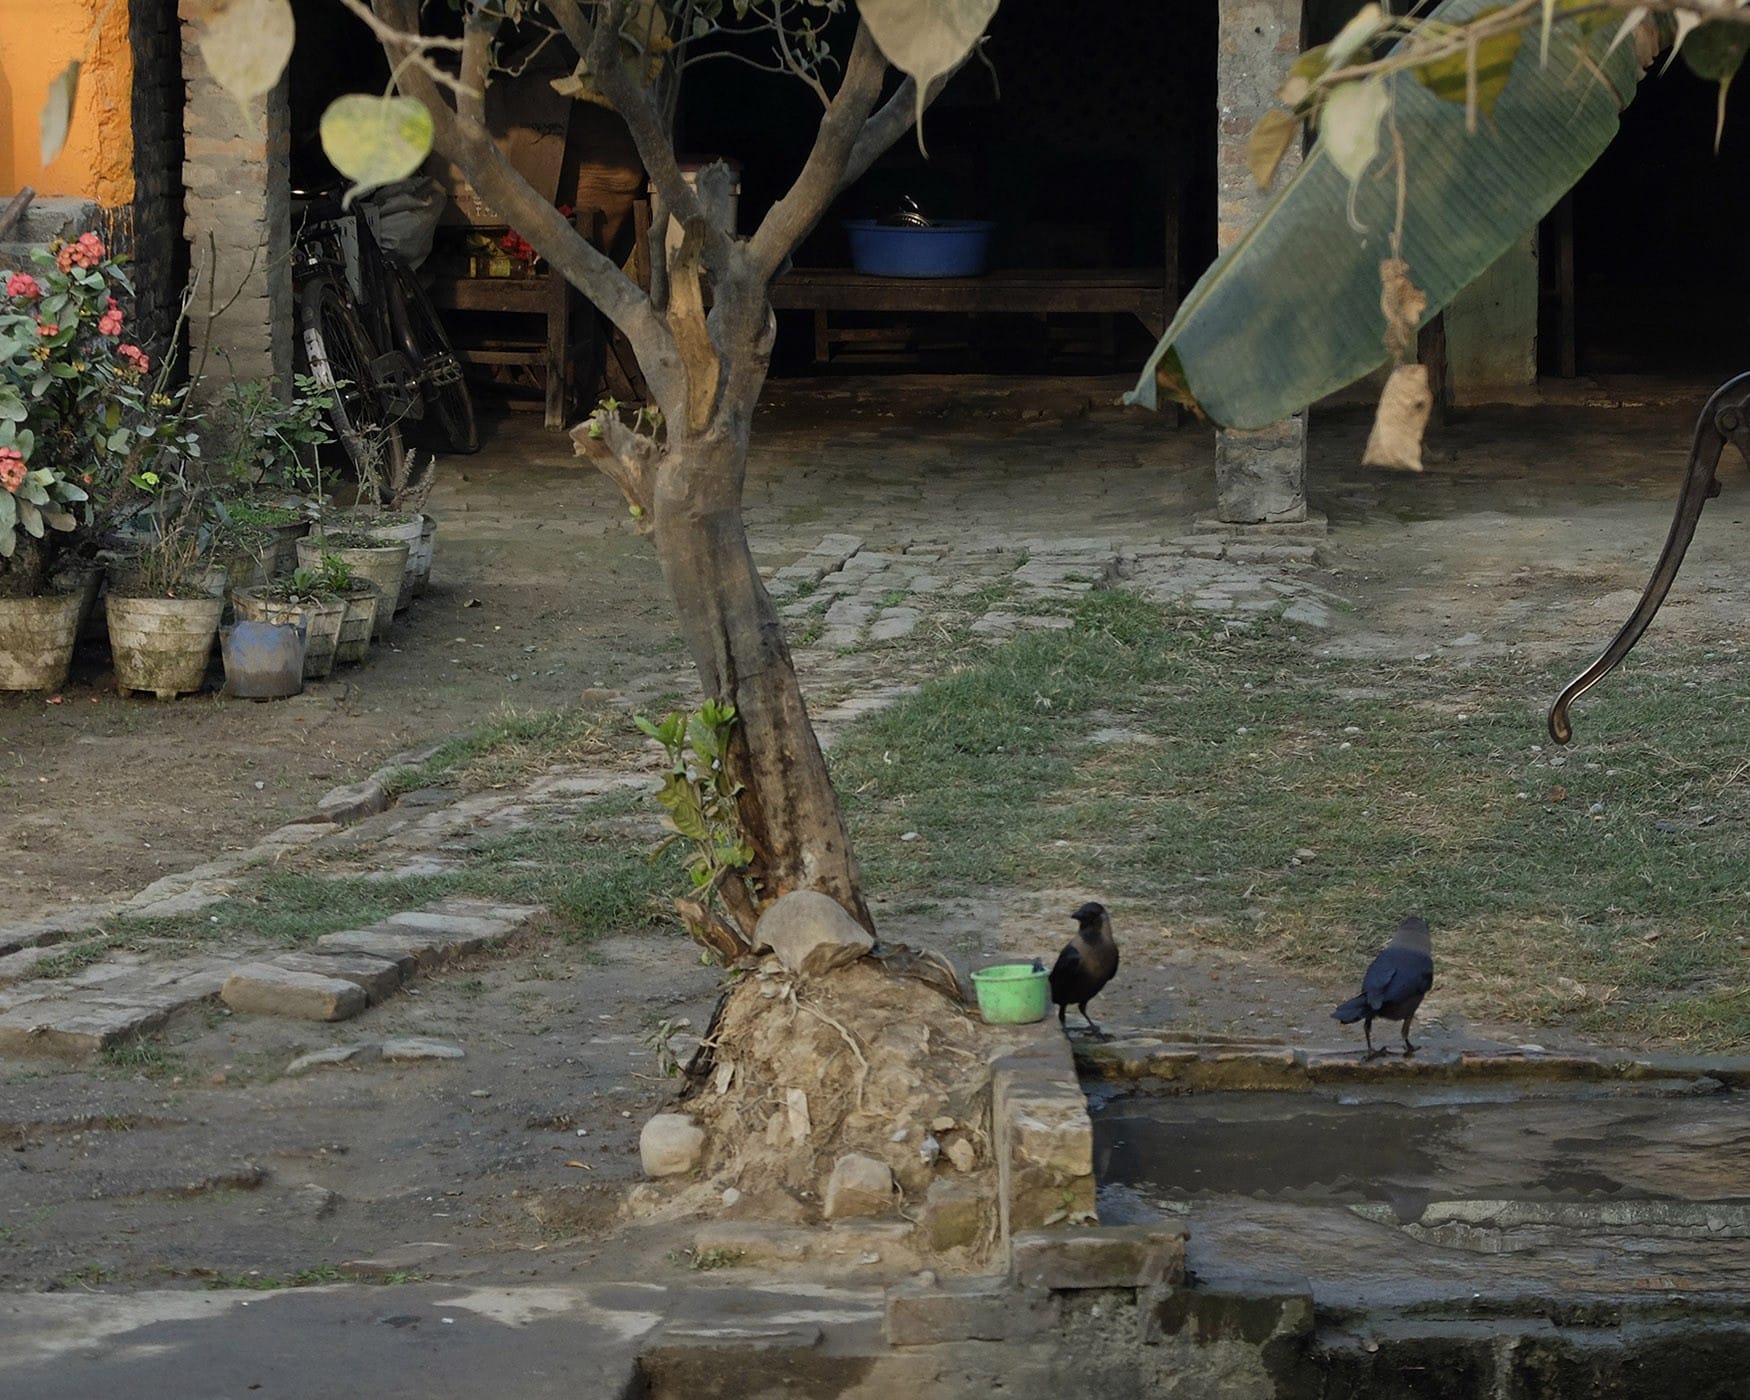 Fotografías de India y Nepal: dos cuervos en una fuente del patio de una casa. Escenas costumbristas de mochilero.